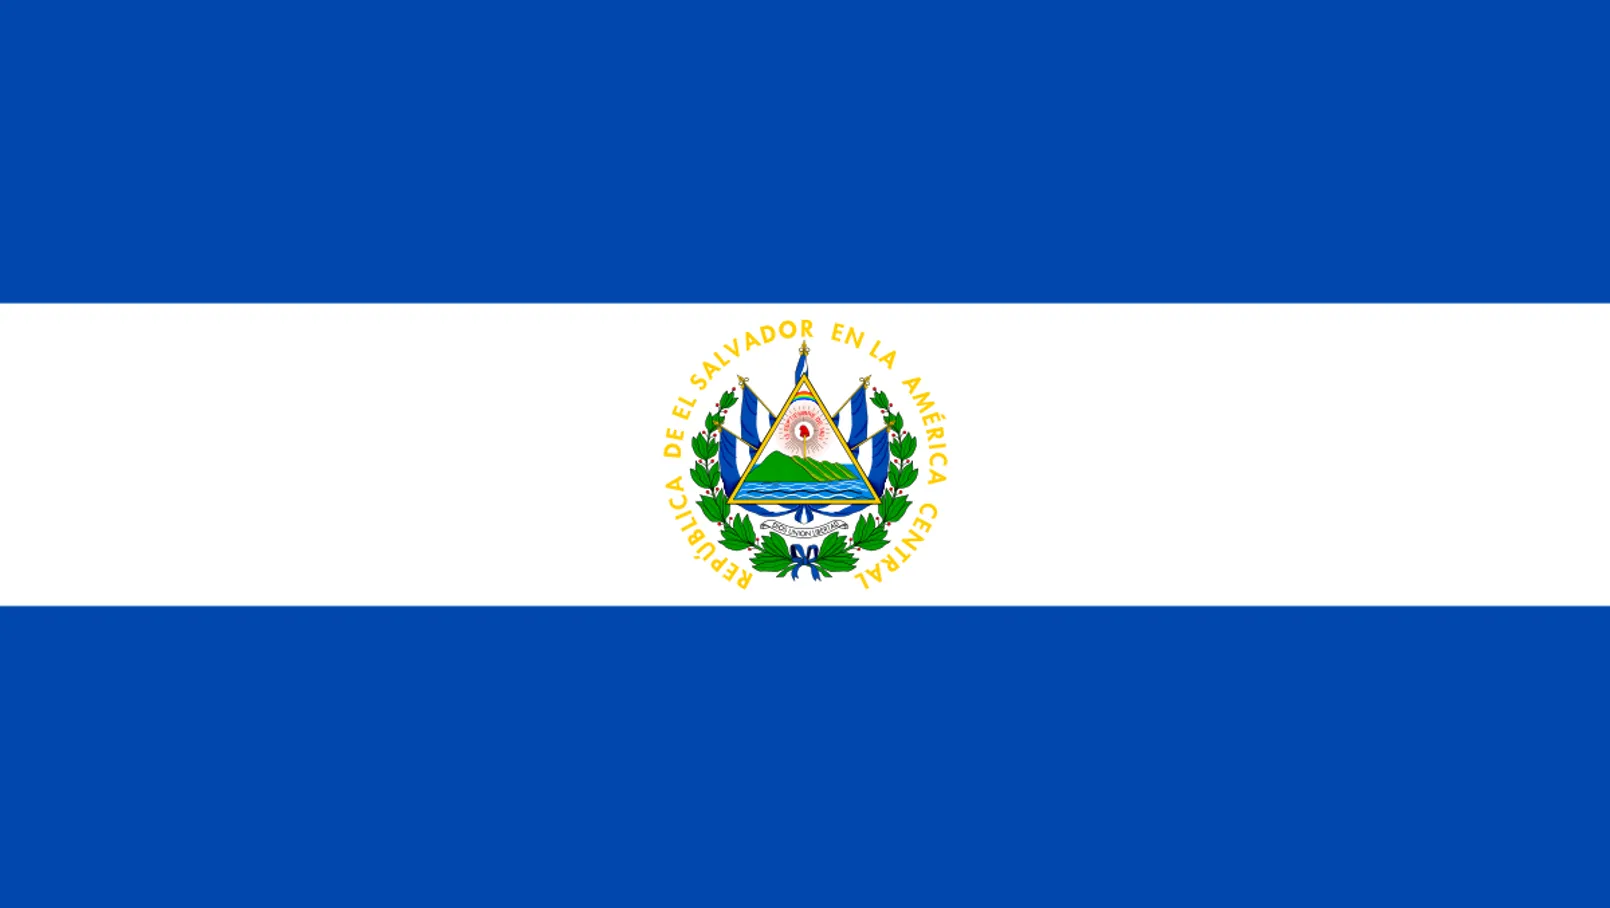 El Salvador.png